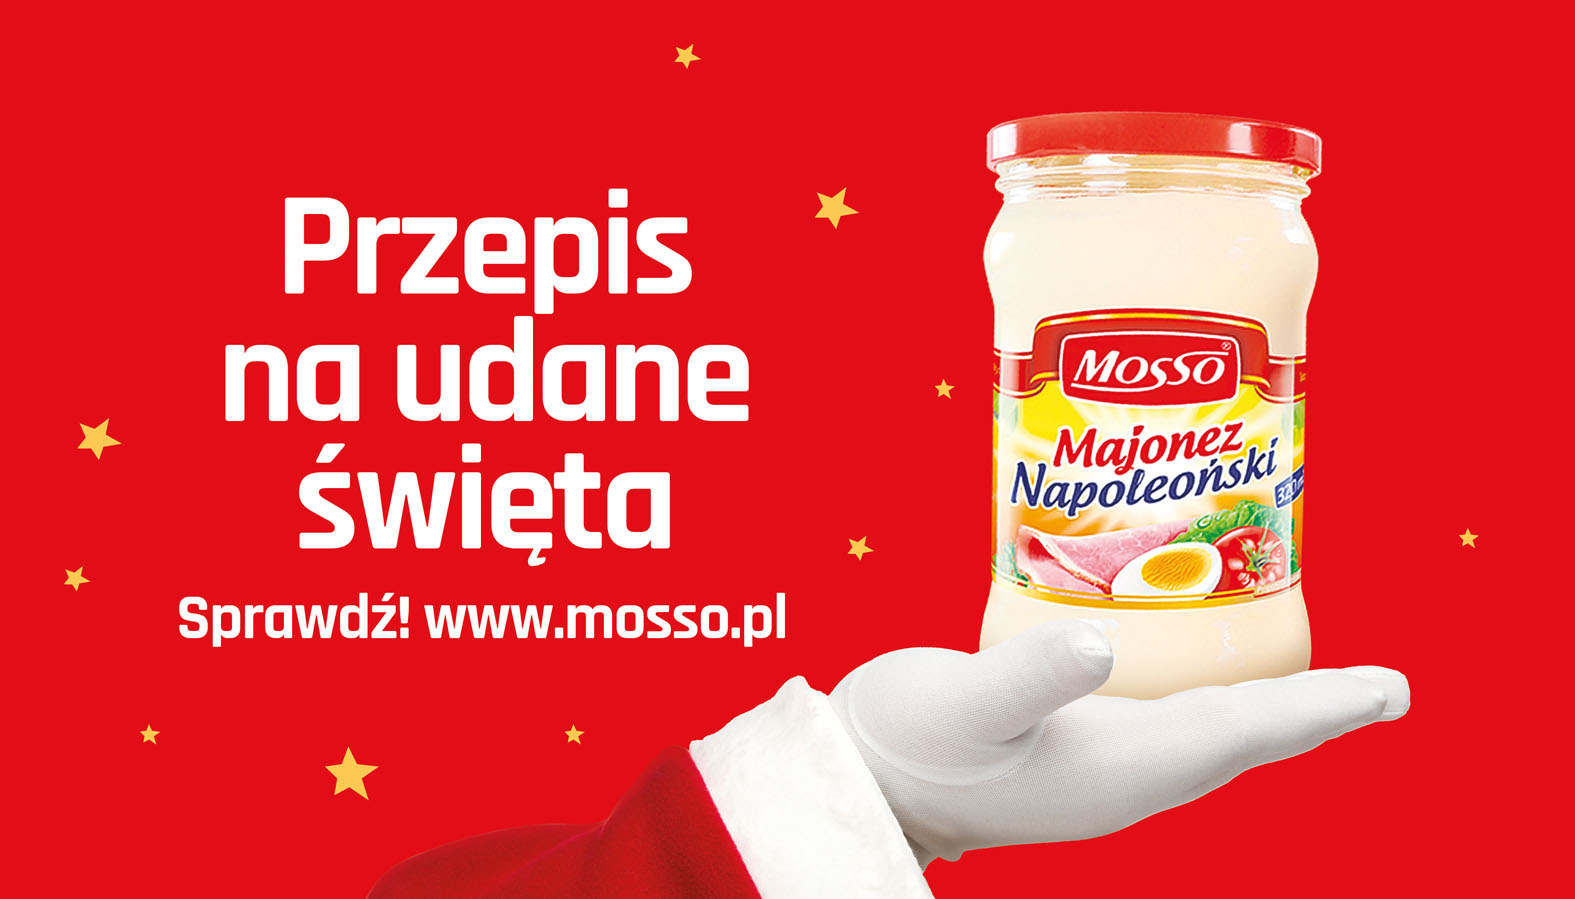 Mosso Kewpie Poland rusza z kampanią świąteczną